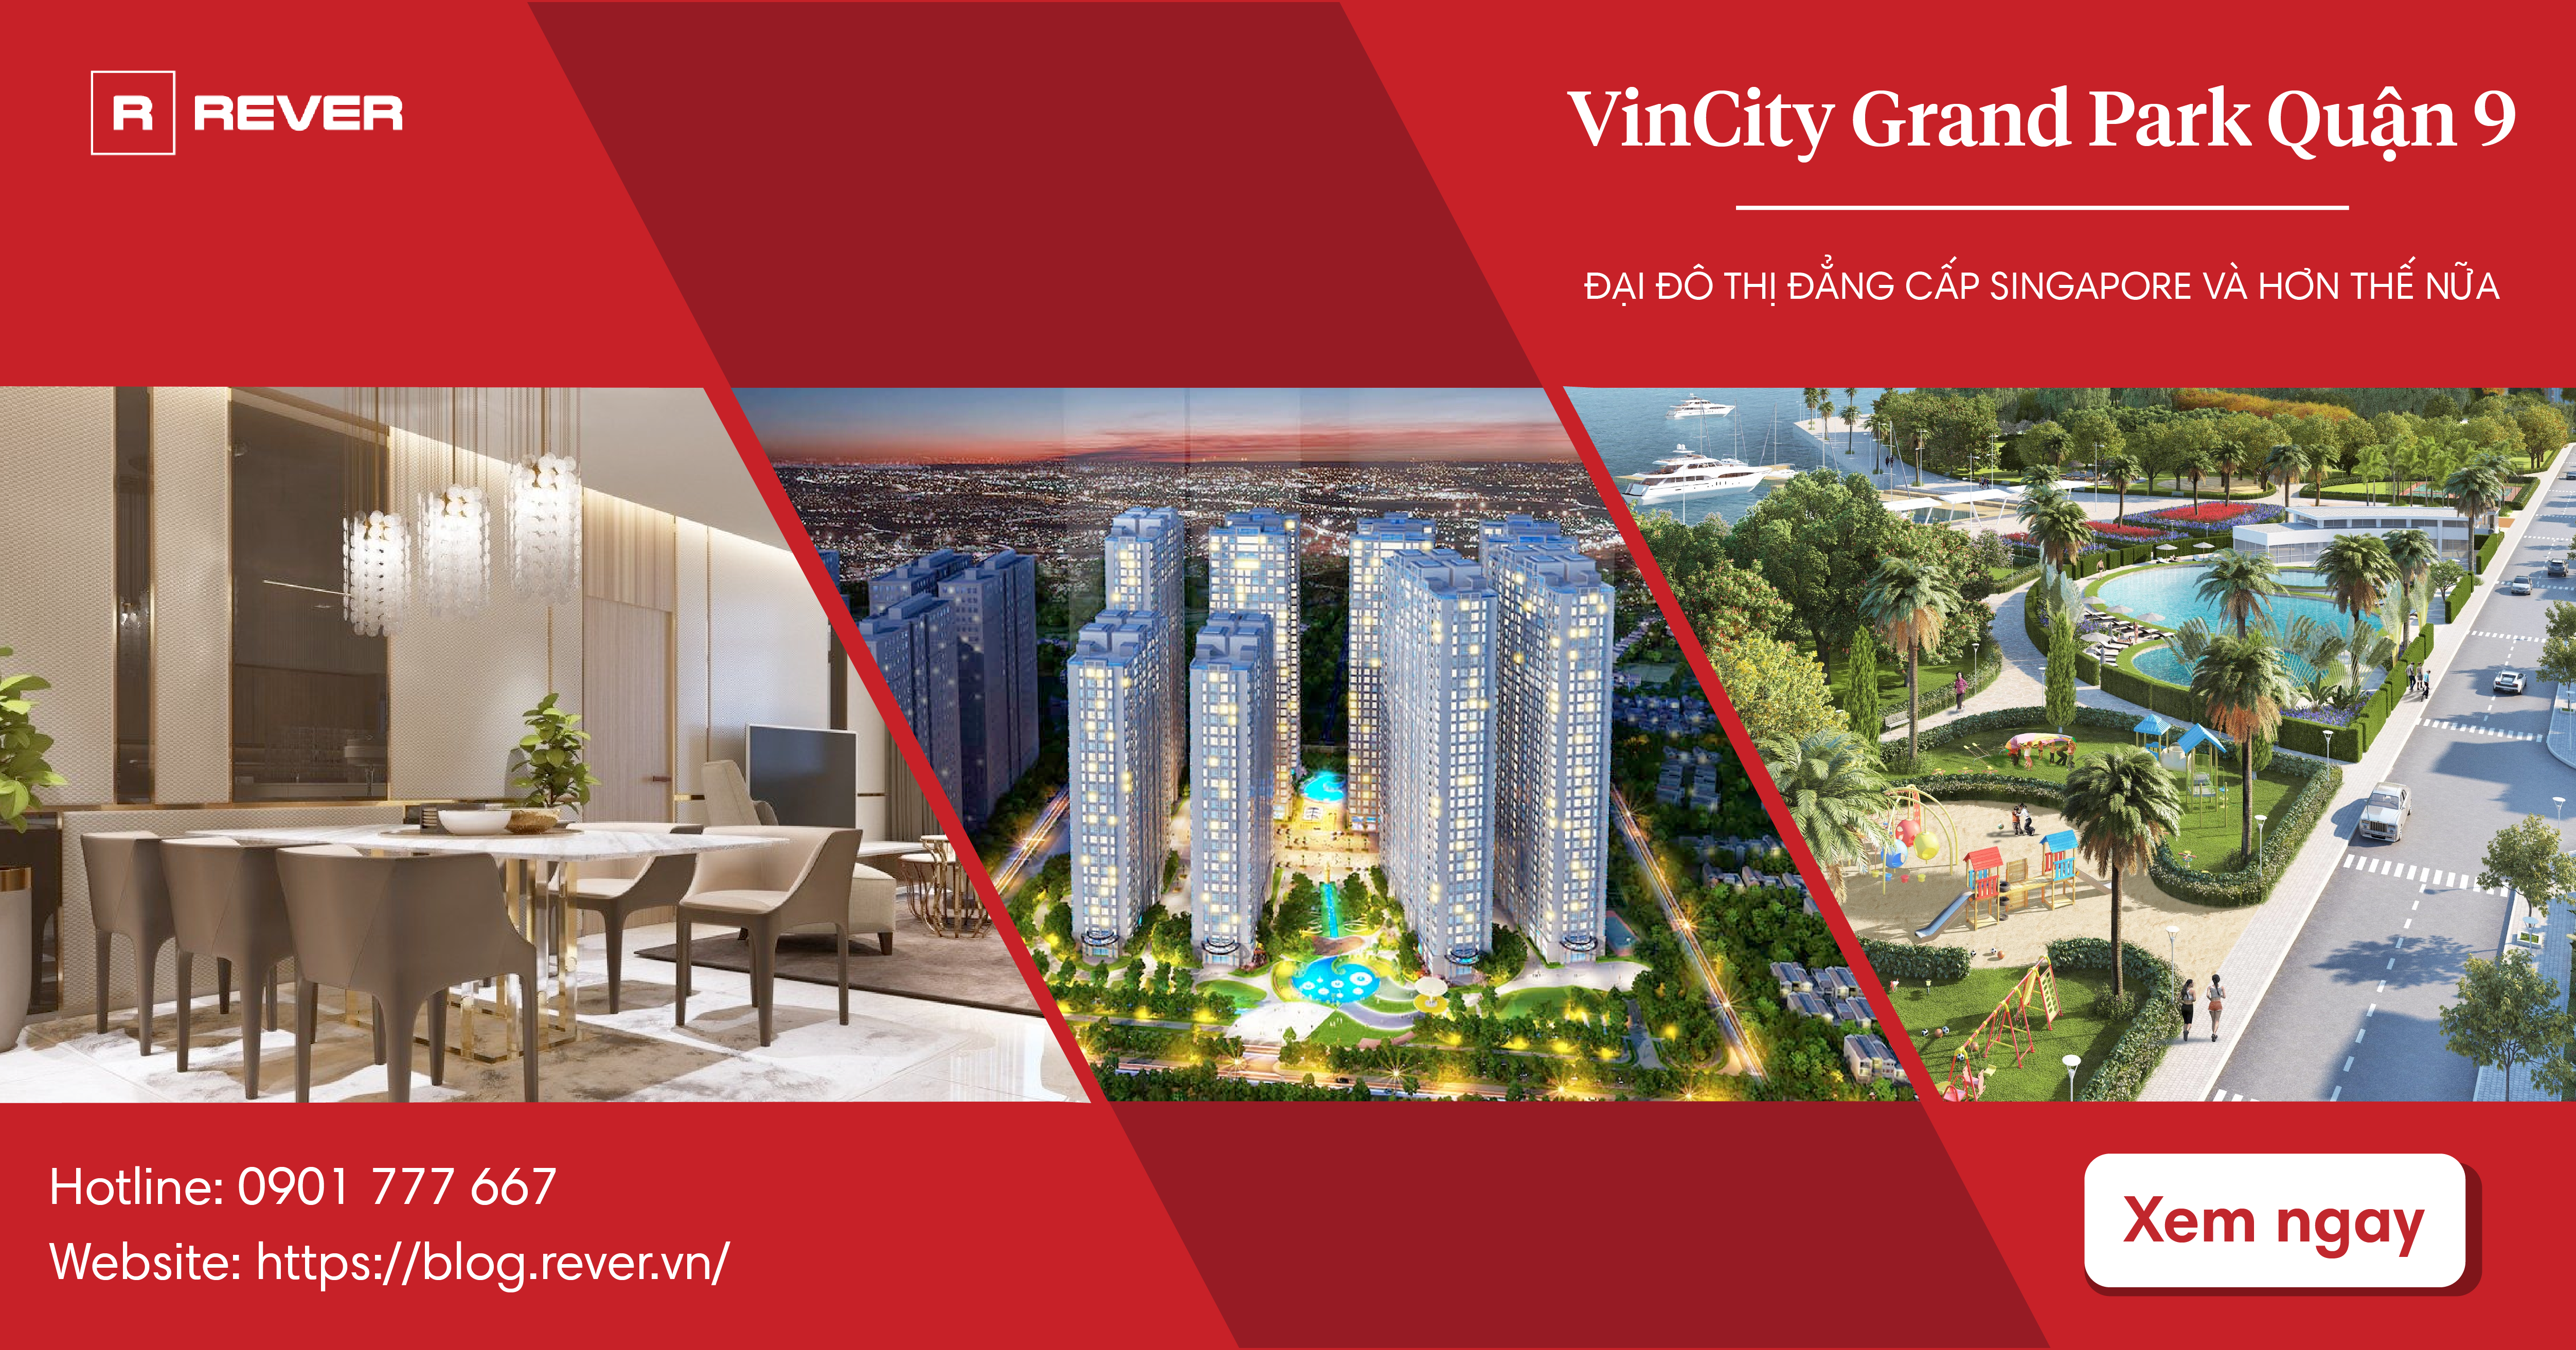 Vì sao căn hộ VinCity Grand Park Quận 9 đáng để đầu tư?